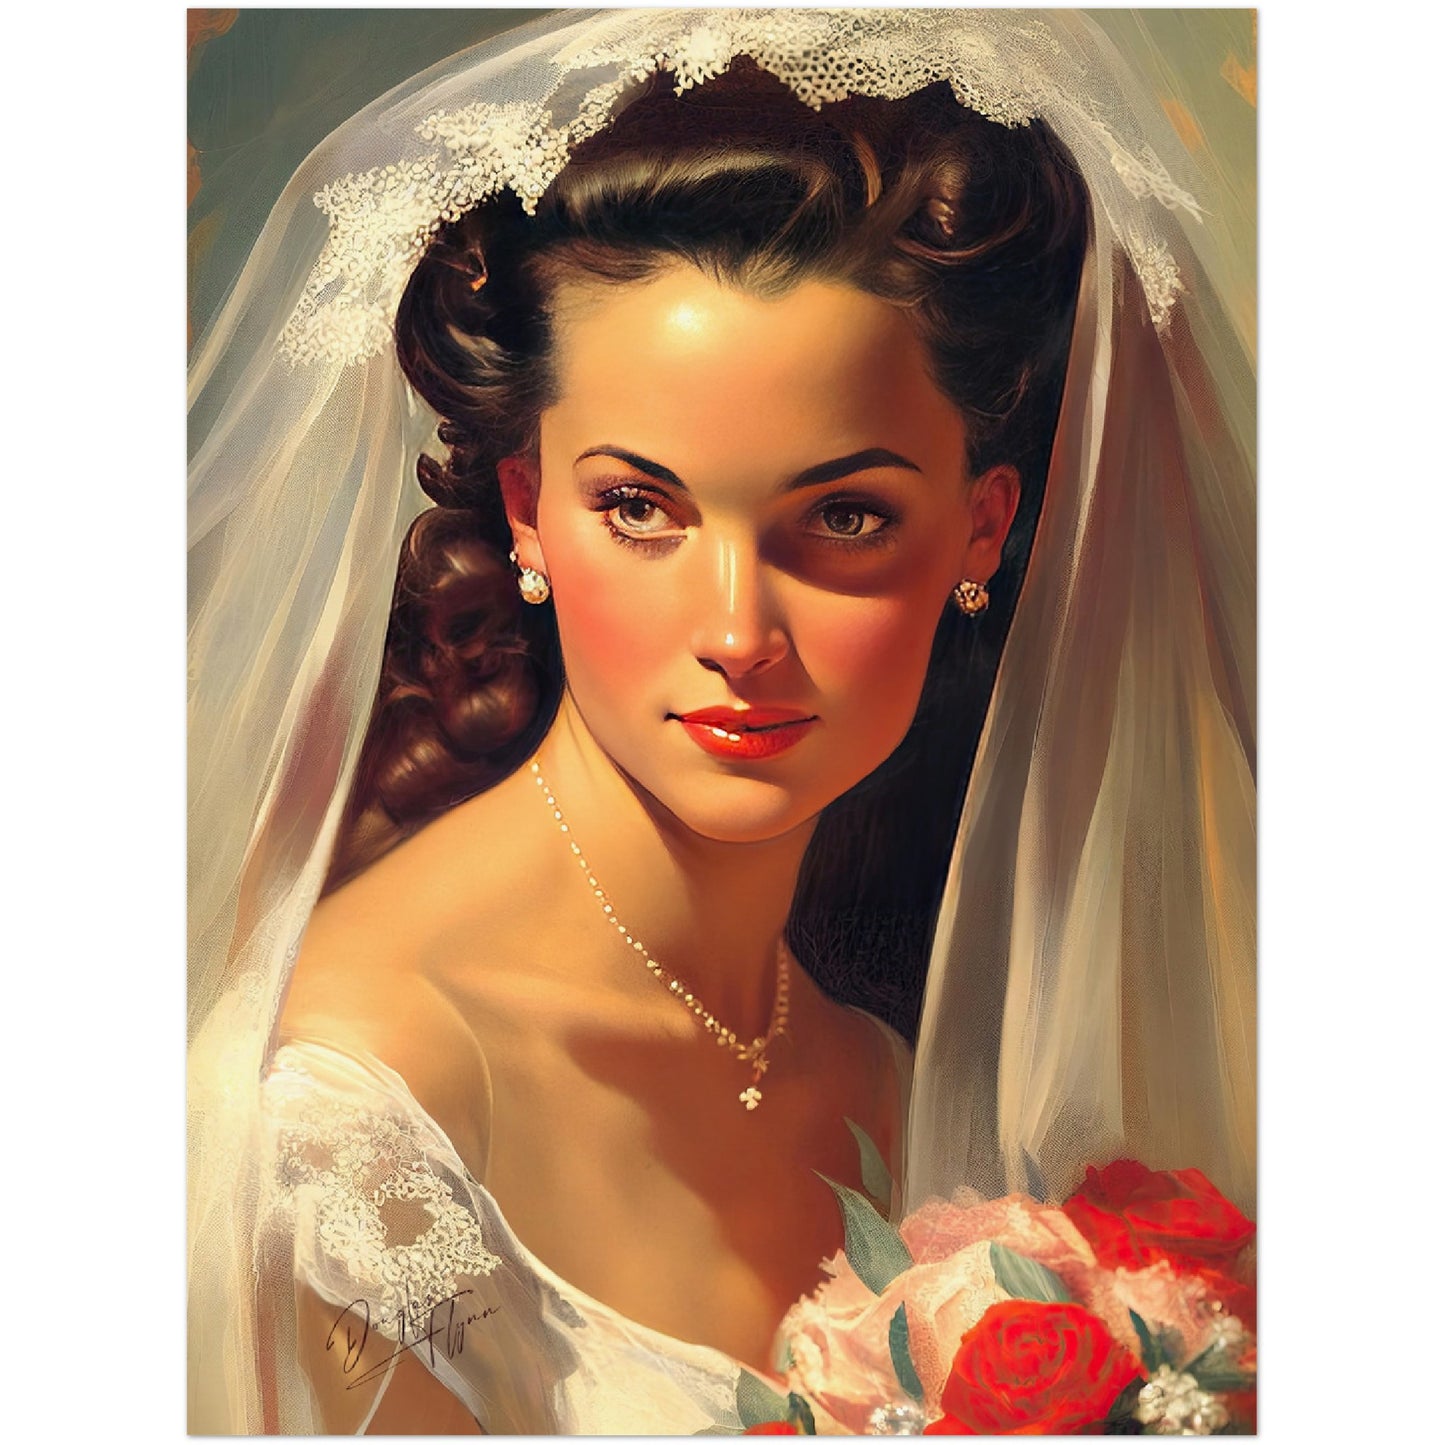 »Wedding Day Dreams« retro poster